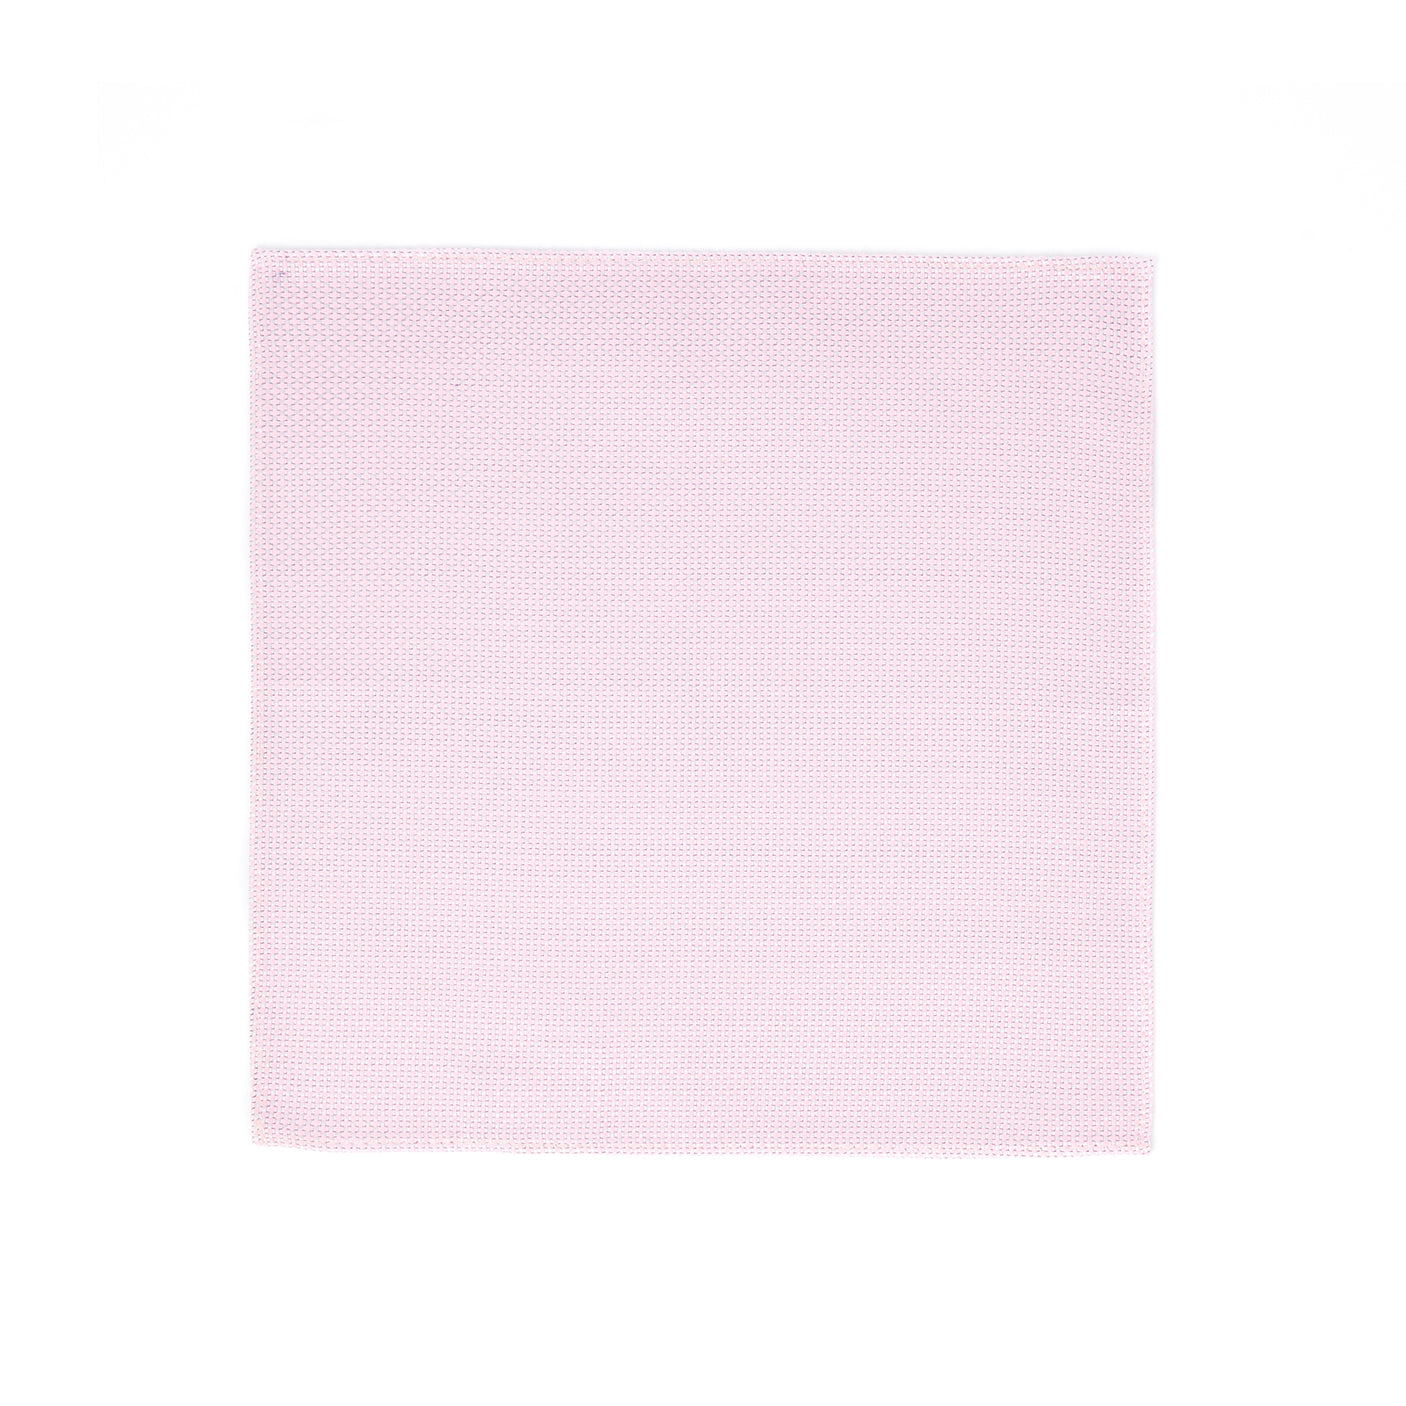 Pañuelo de bolsillo 100% seda - Sarga de seda - Rosa - 26x26 cm - Draeger